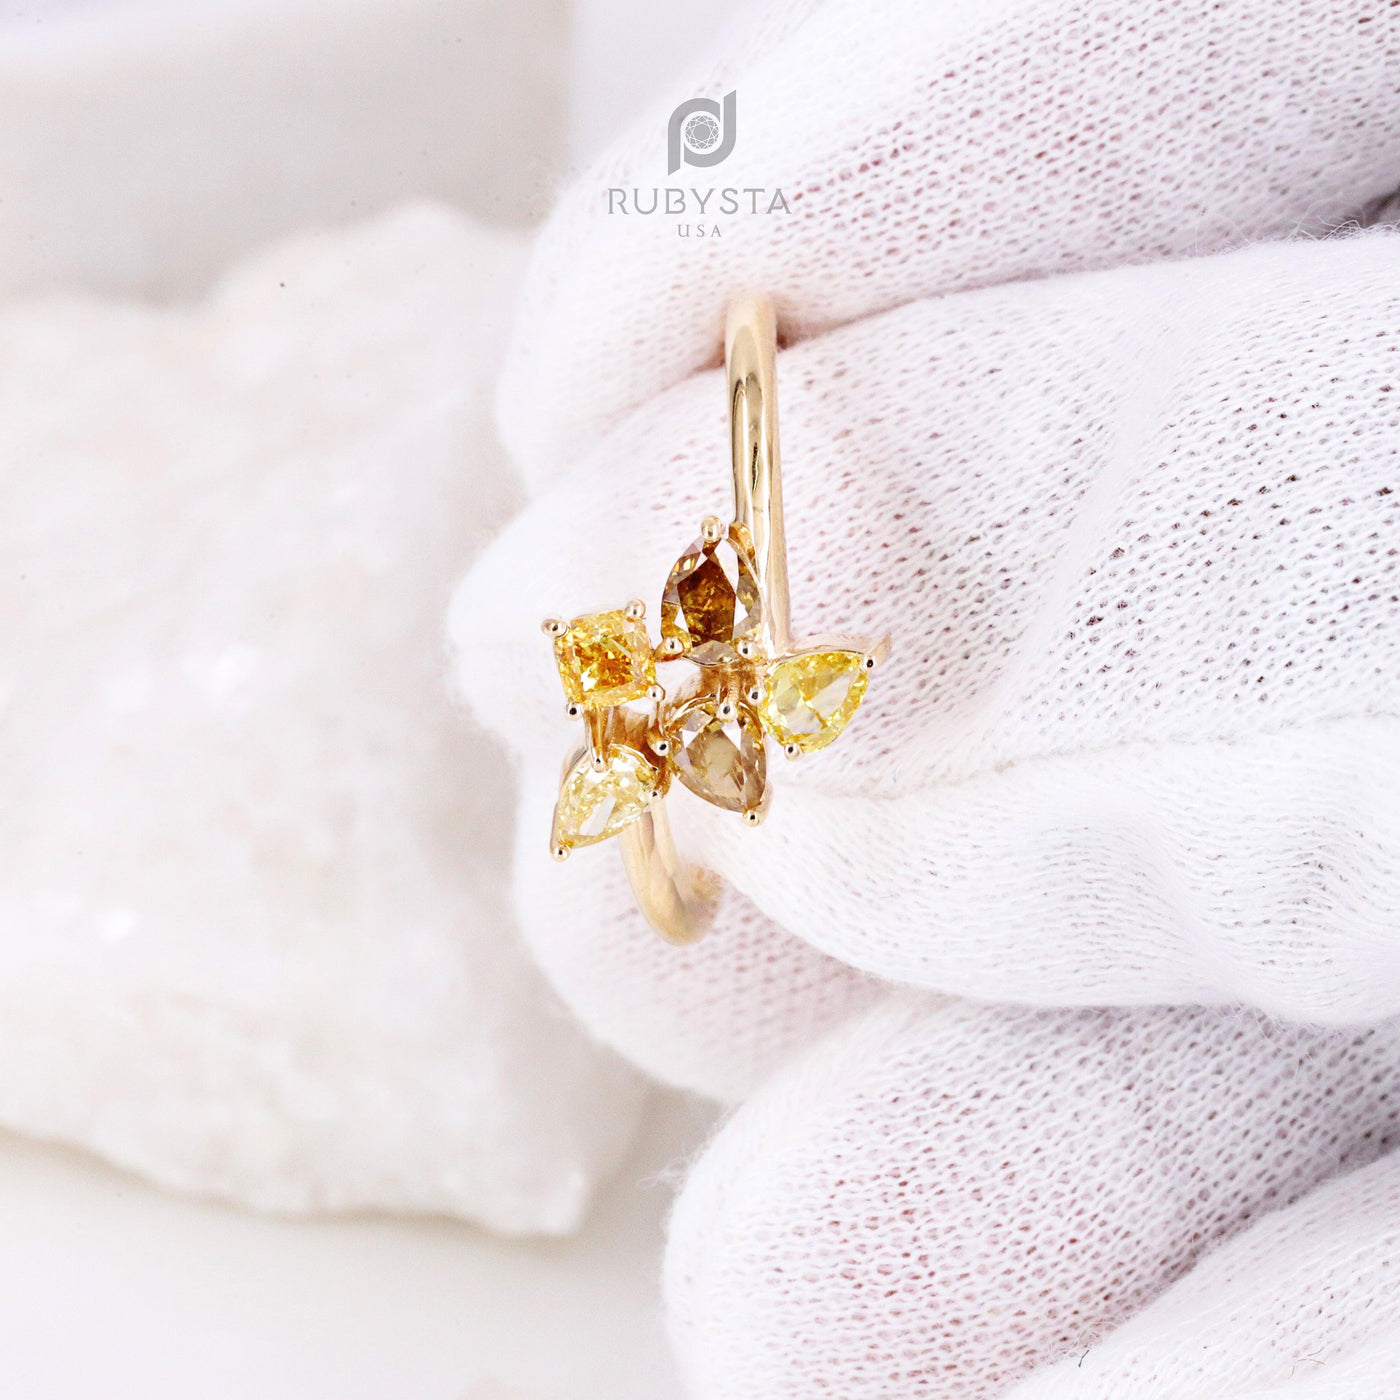 Unique Natural Color Diamond Engagement Ring | Pear Diamonds | Diamond Ring | Fancy Diamond Ring - Rubysta